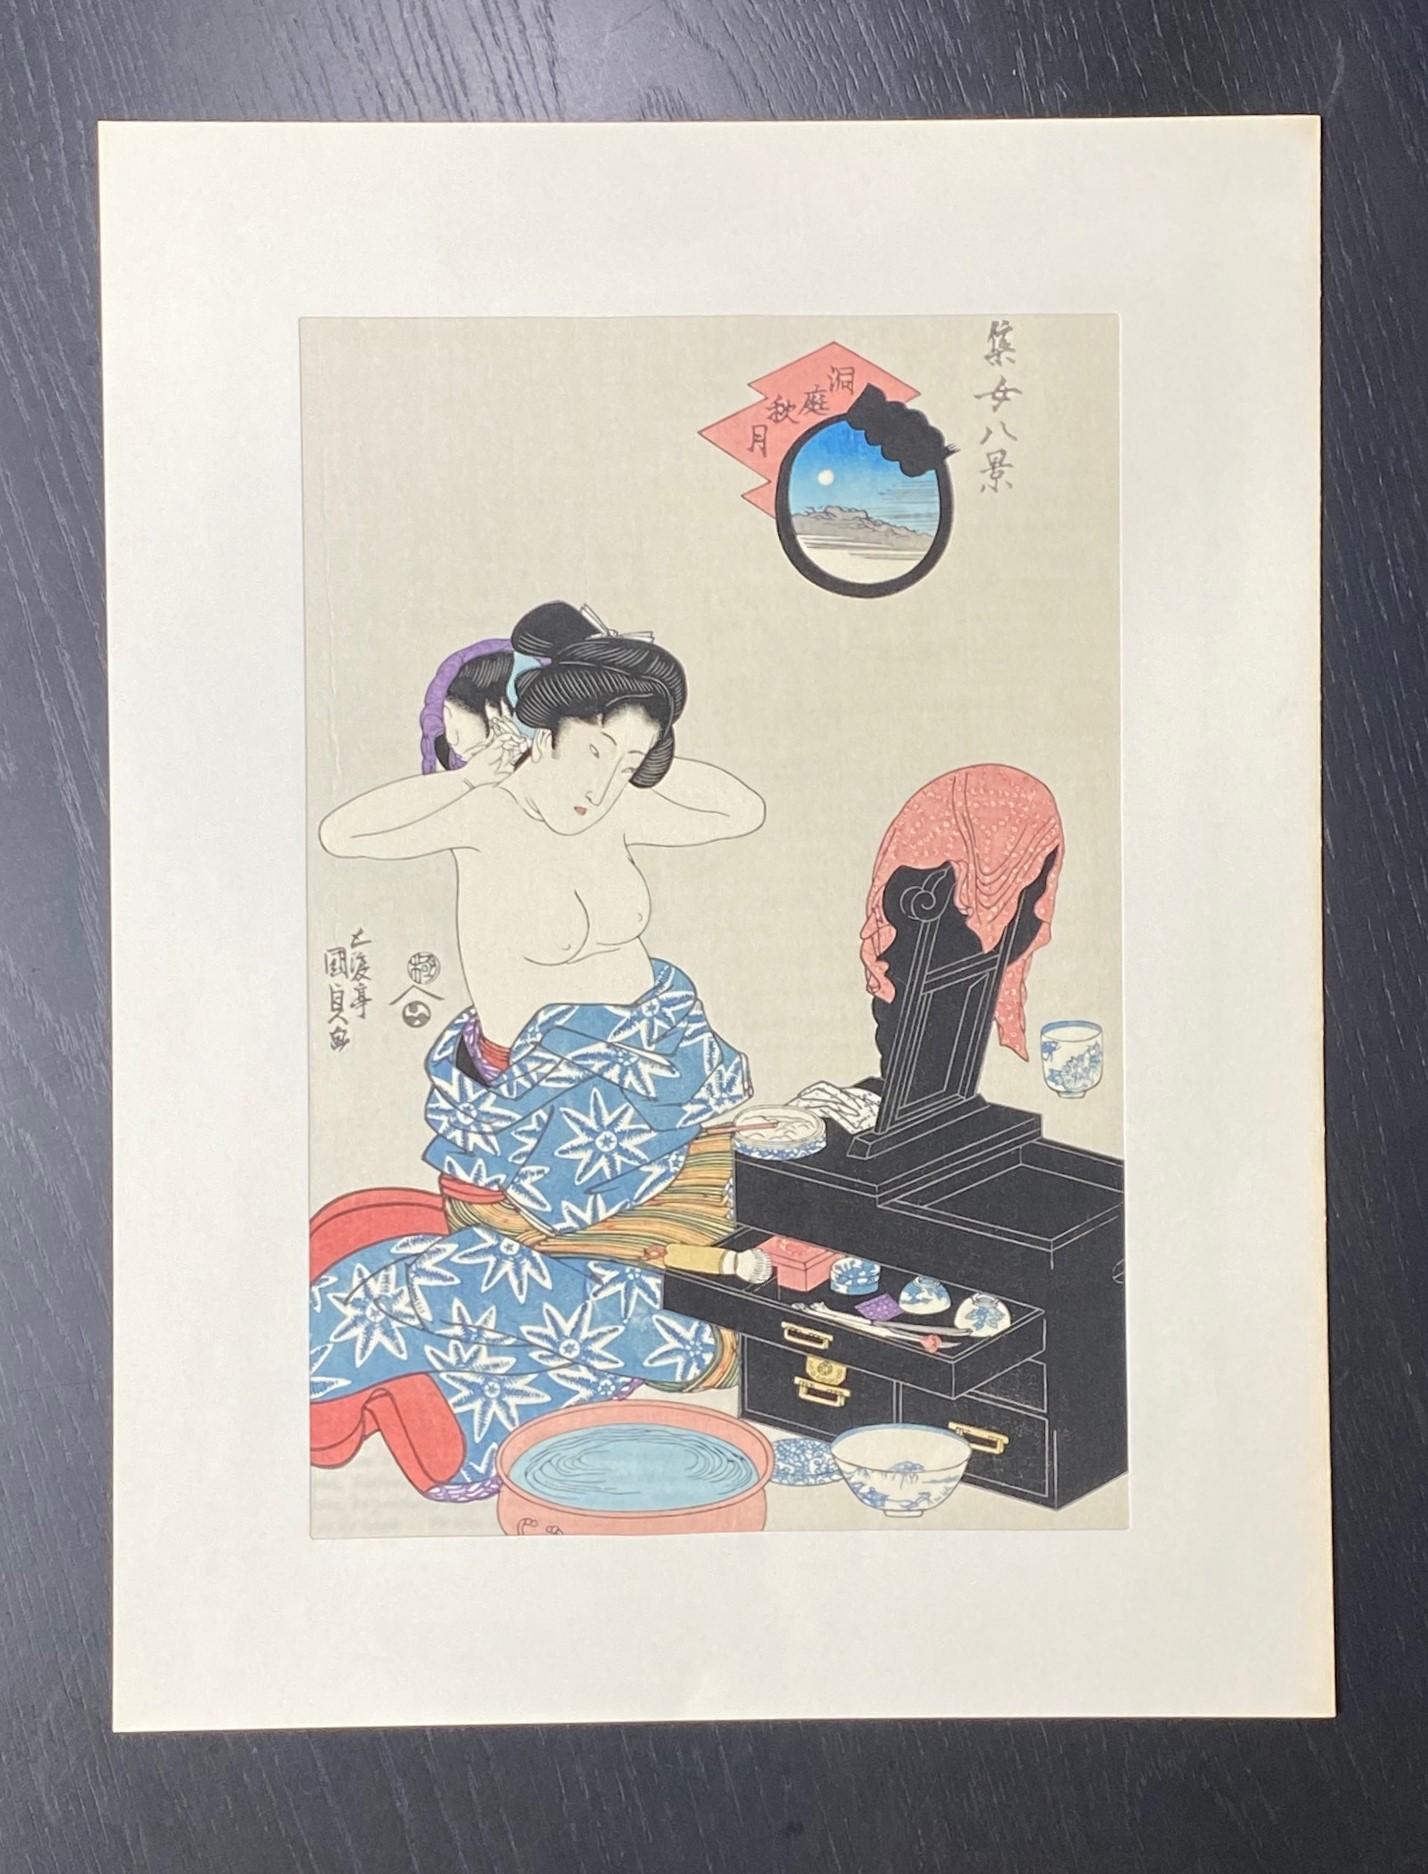 Ein wunderschön komponierter und farbenprächtiger japanischer Farbholzschnitt, der eine halbbekleidete nackte Frau, wahrscheinlich eine Geisha, zeigt, die sich vor ihrer Eitelkeit sitzend die Haare richtet.  Ein für die damalige Zeit etwas